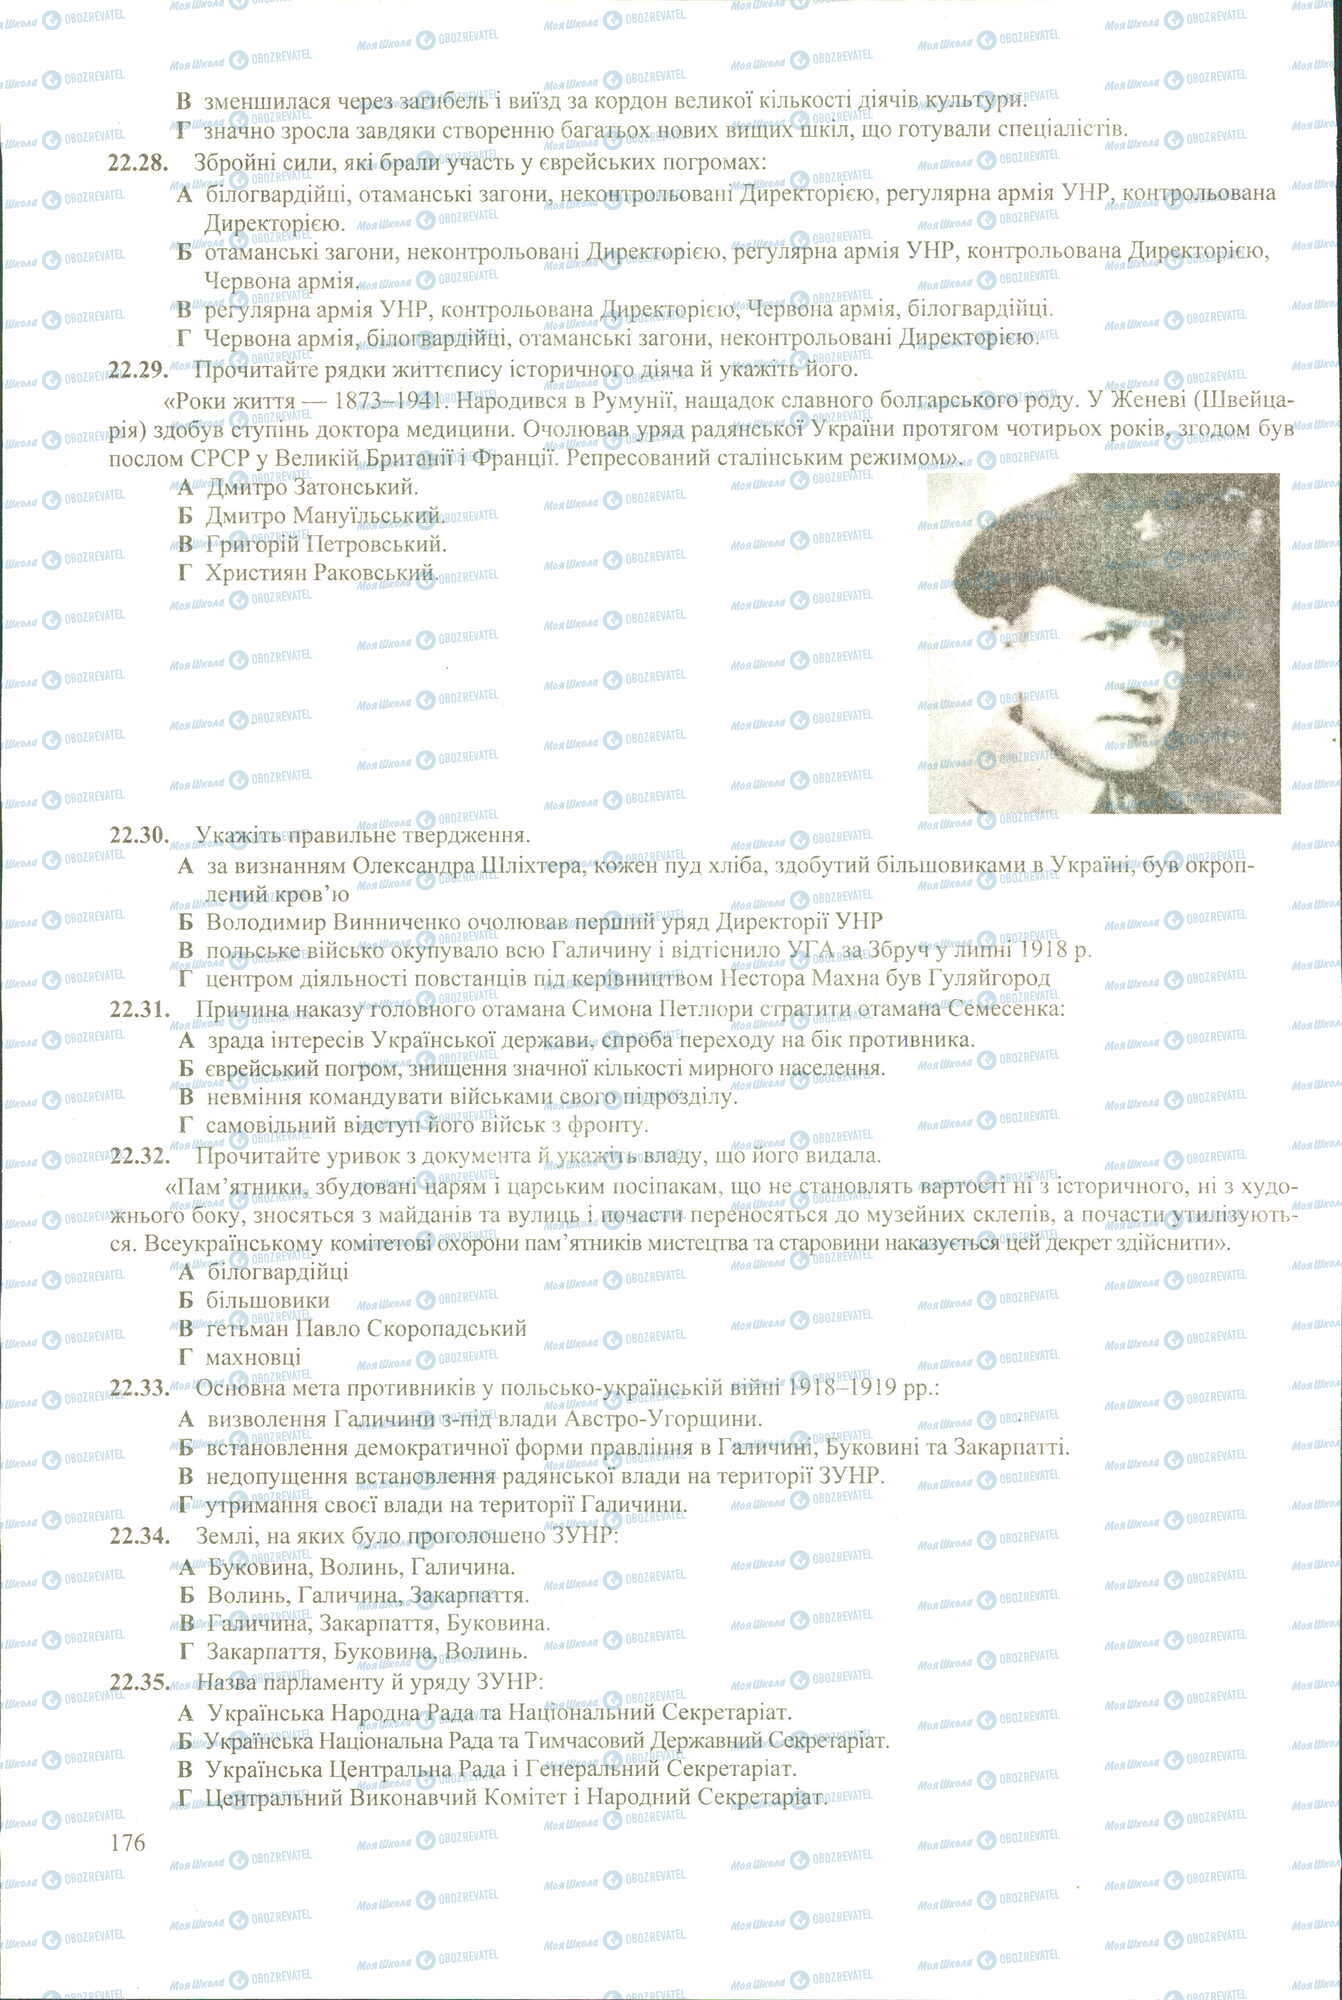 ЗНО История Украины 11 класс страница 28-35